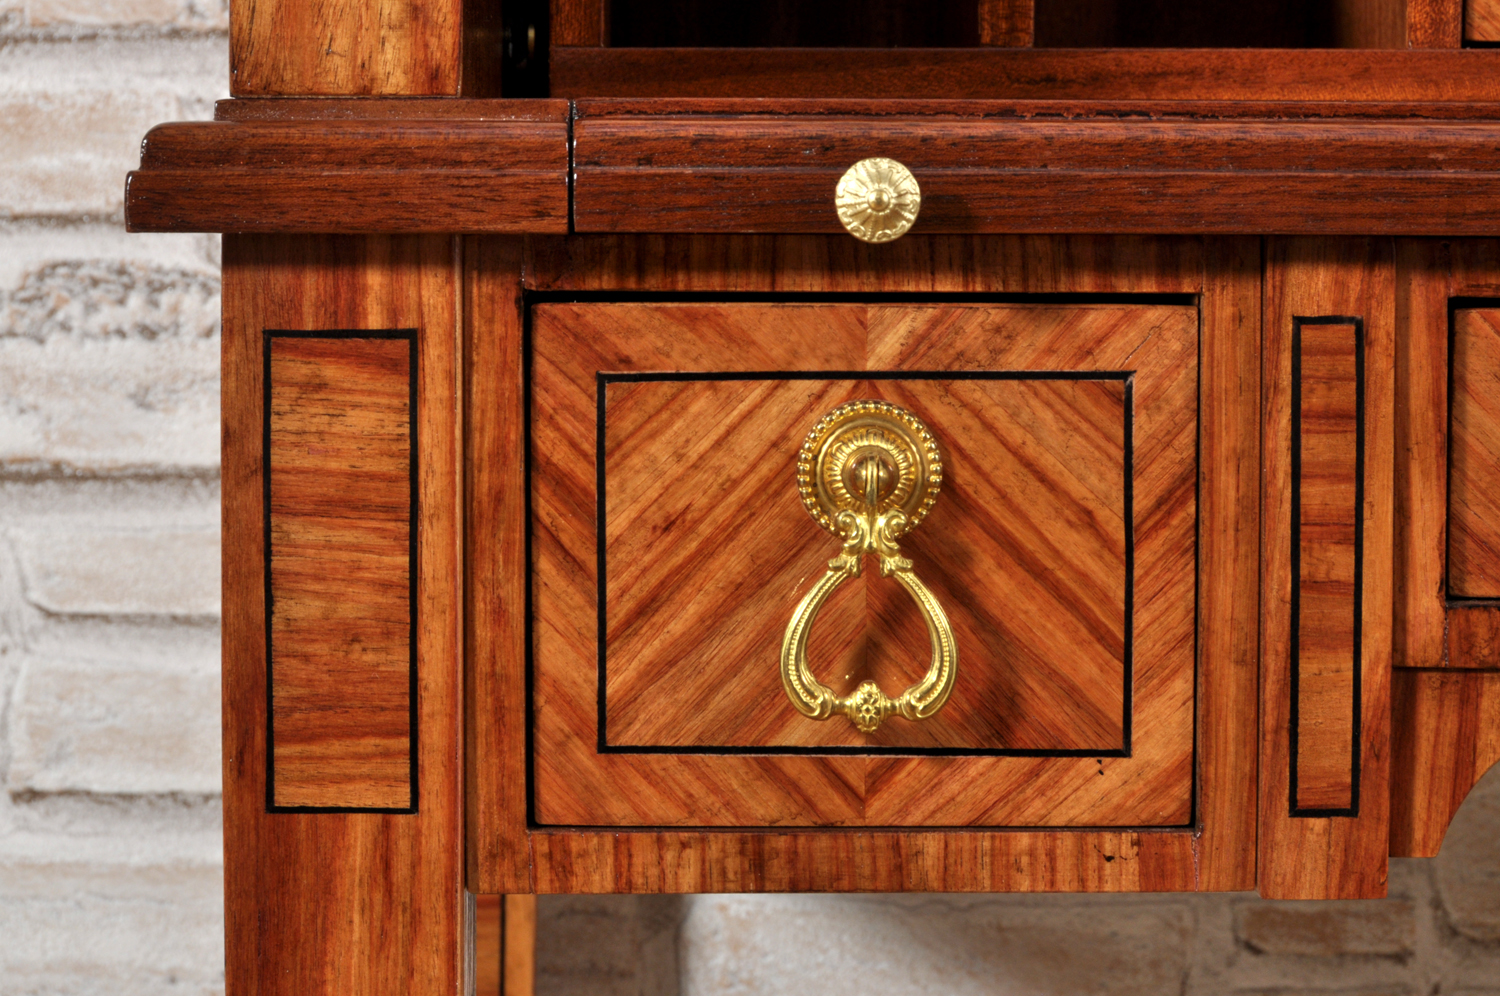 piccolo cassetto del bureau scrittoio a cilindro intarsiato a mano in legno di palissandro e ebano maniglia pendente cesellata a mano in ottone massiccio